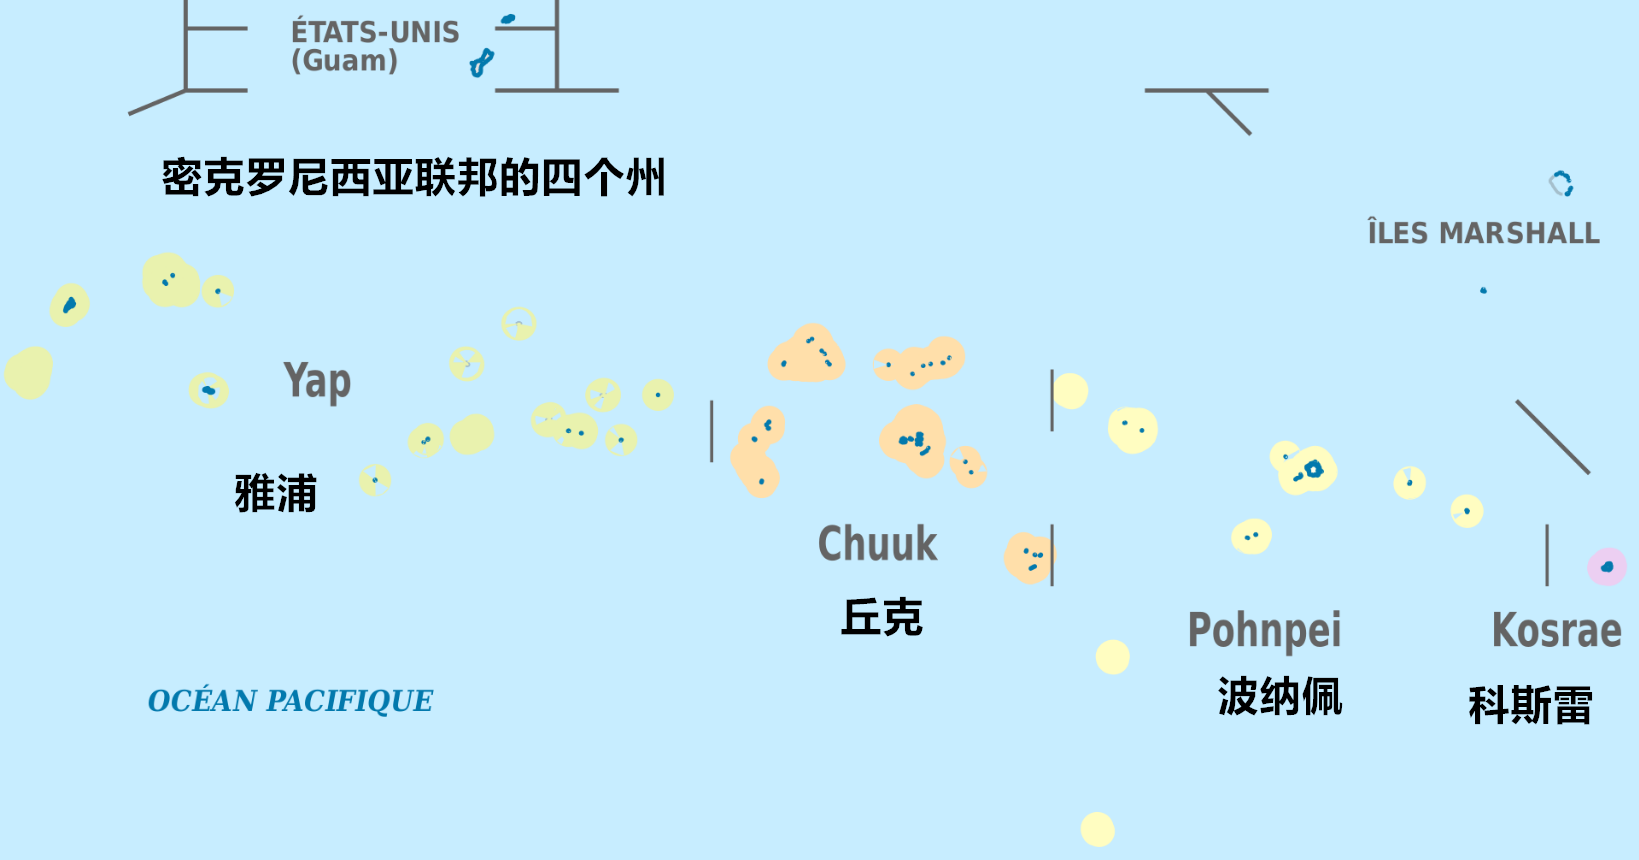 帕劳行政区划图片